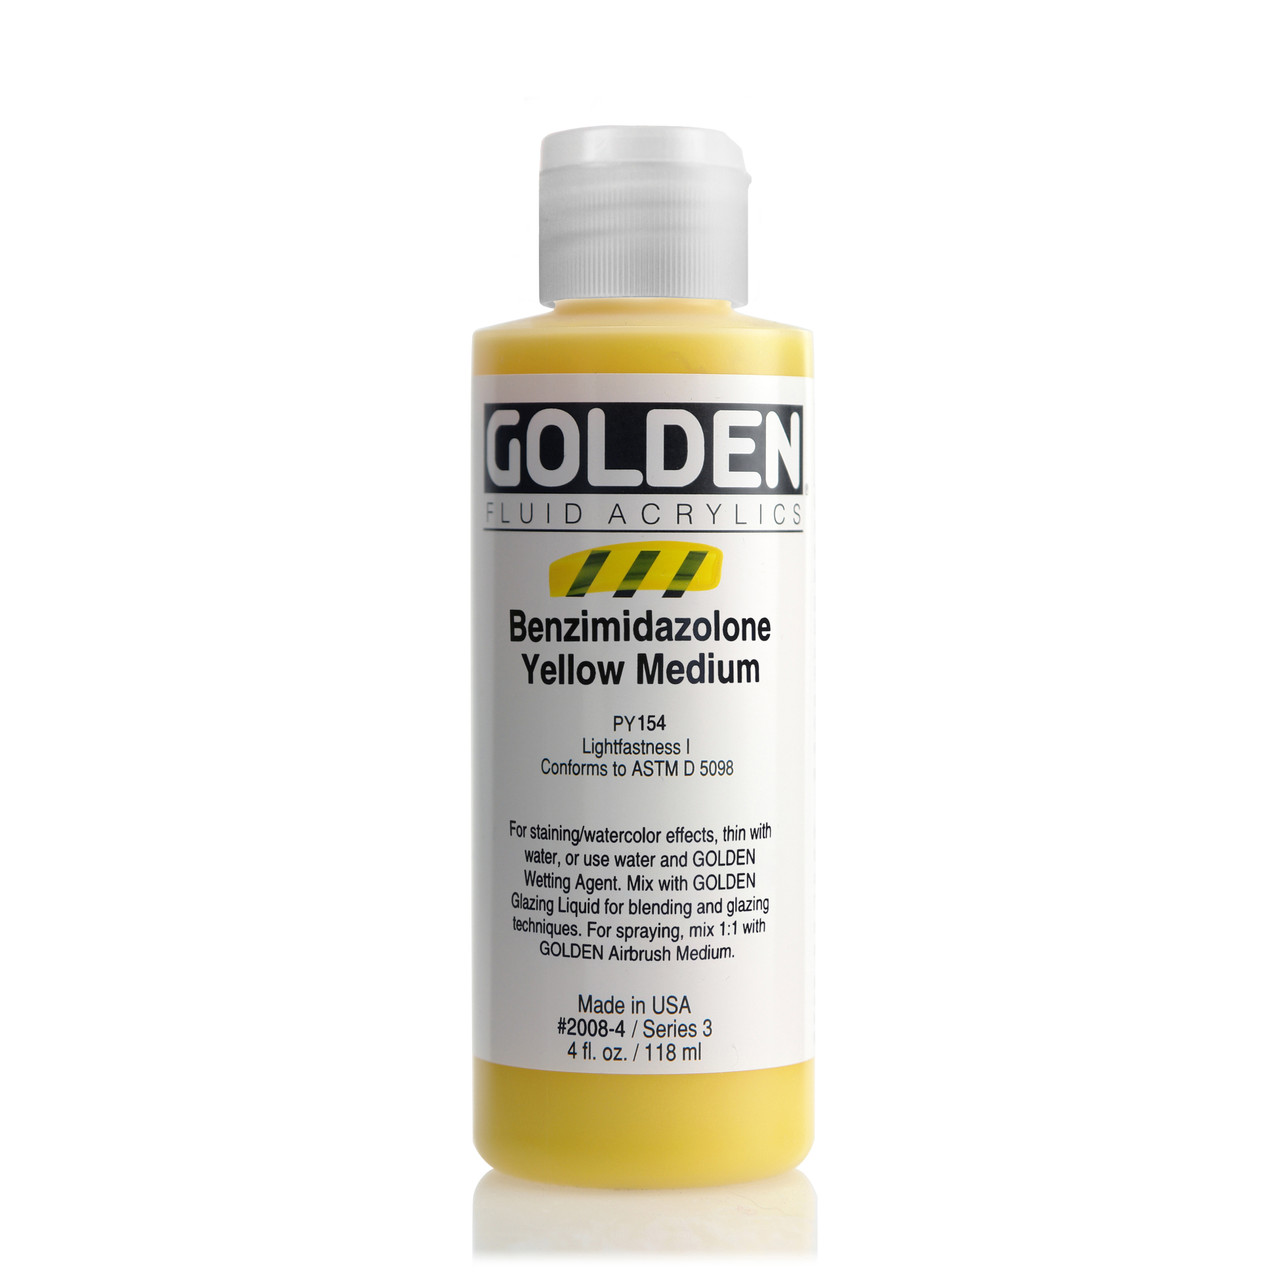 Golden Airbrush Medium 8oz